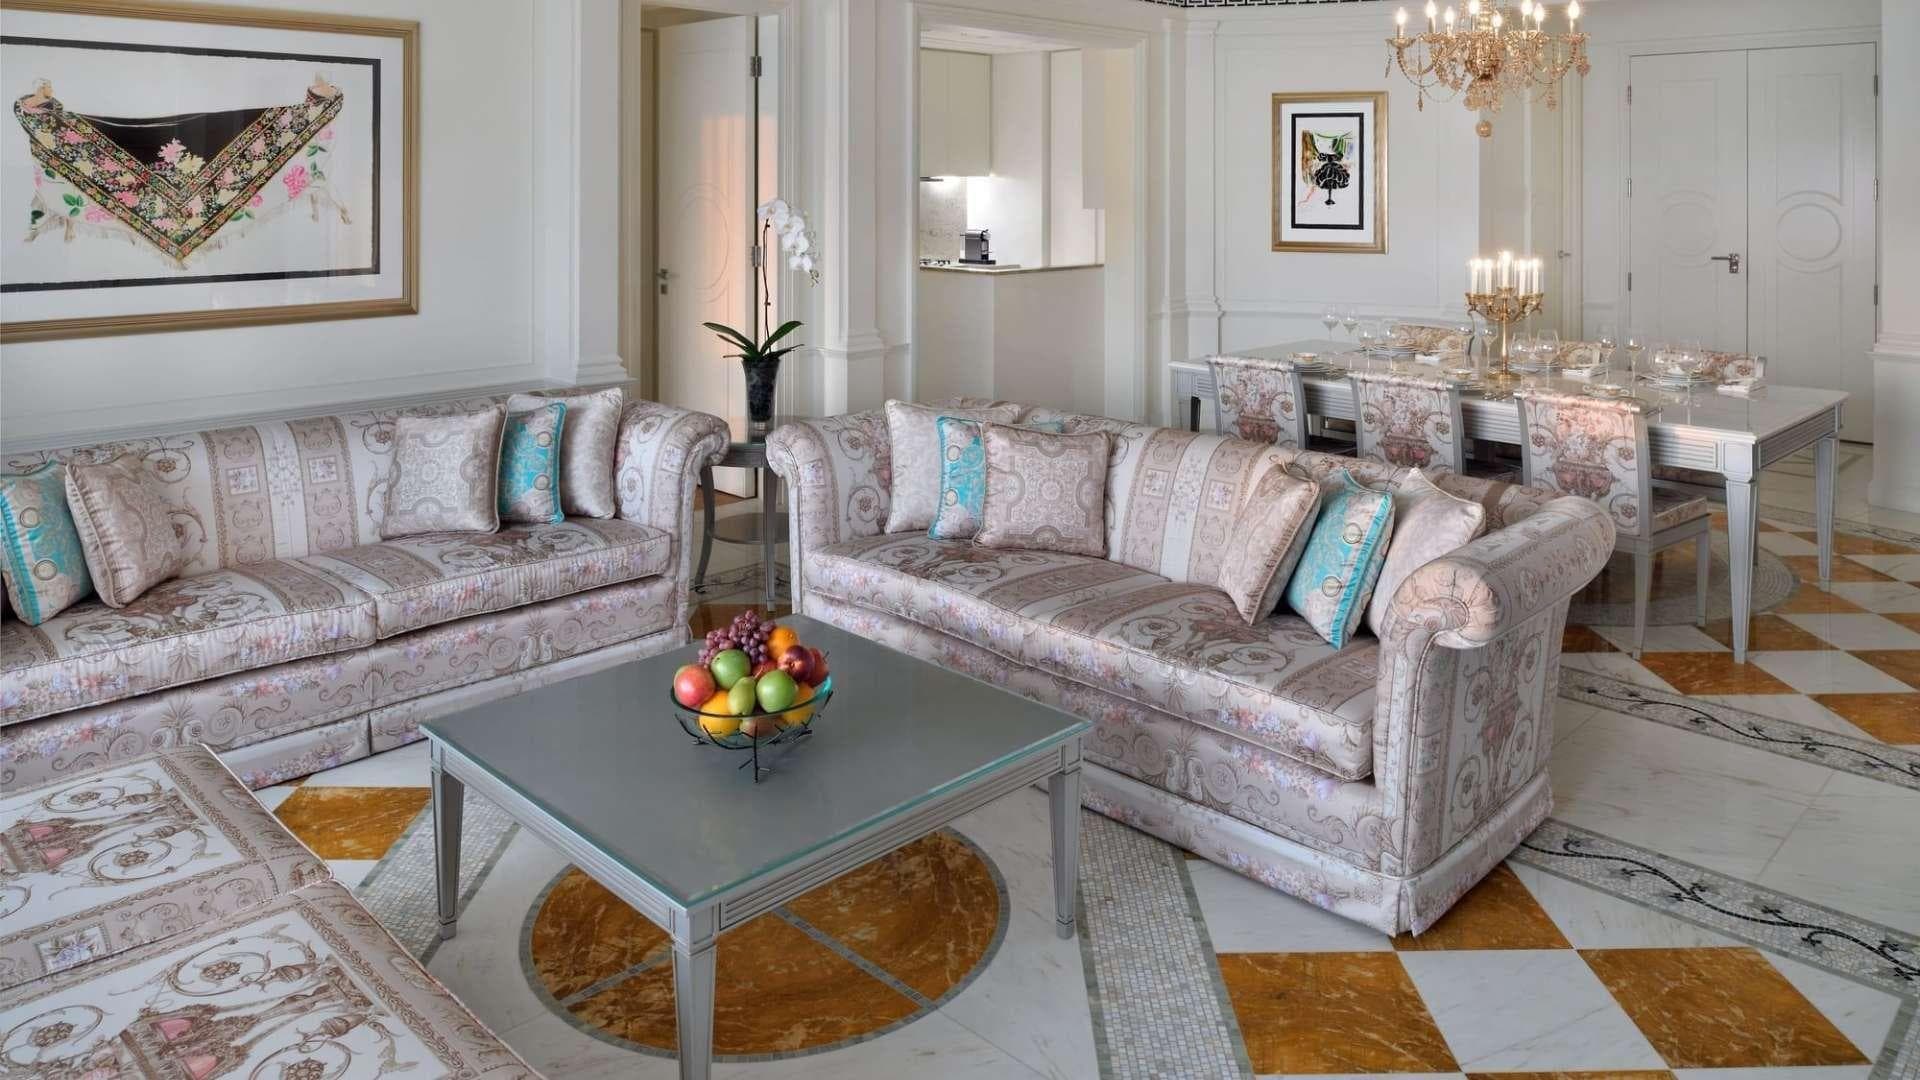 2 Bedroom Apartment For Rent Palazzo Versace Lp36800 Ec9ba71ee238280.jpg